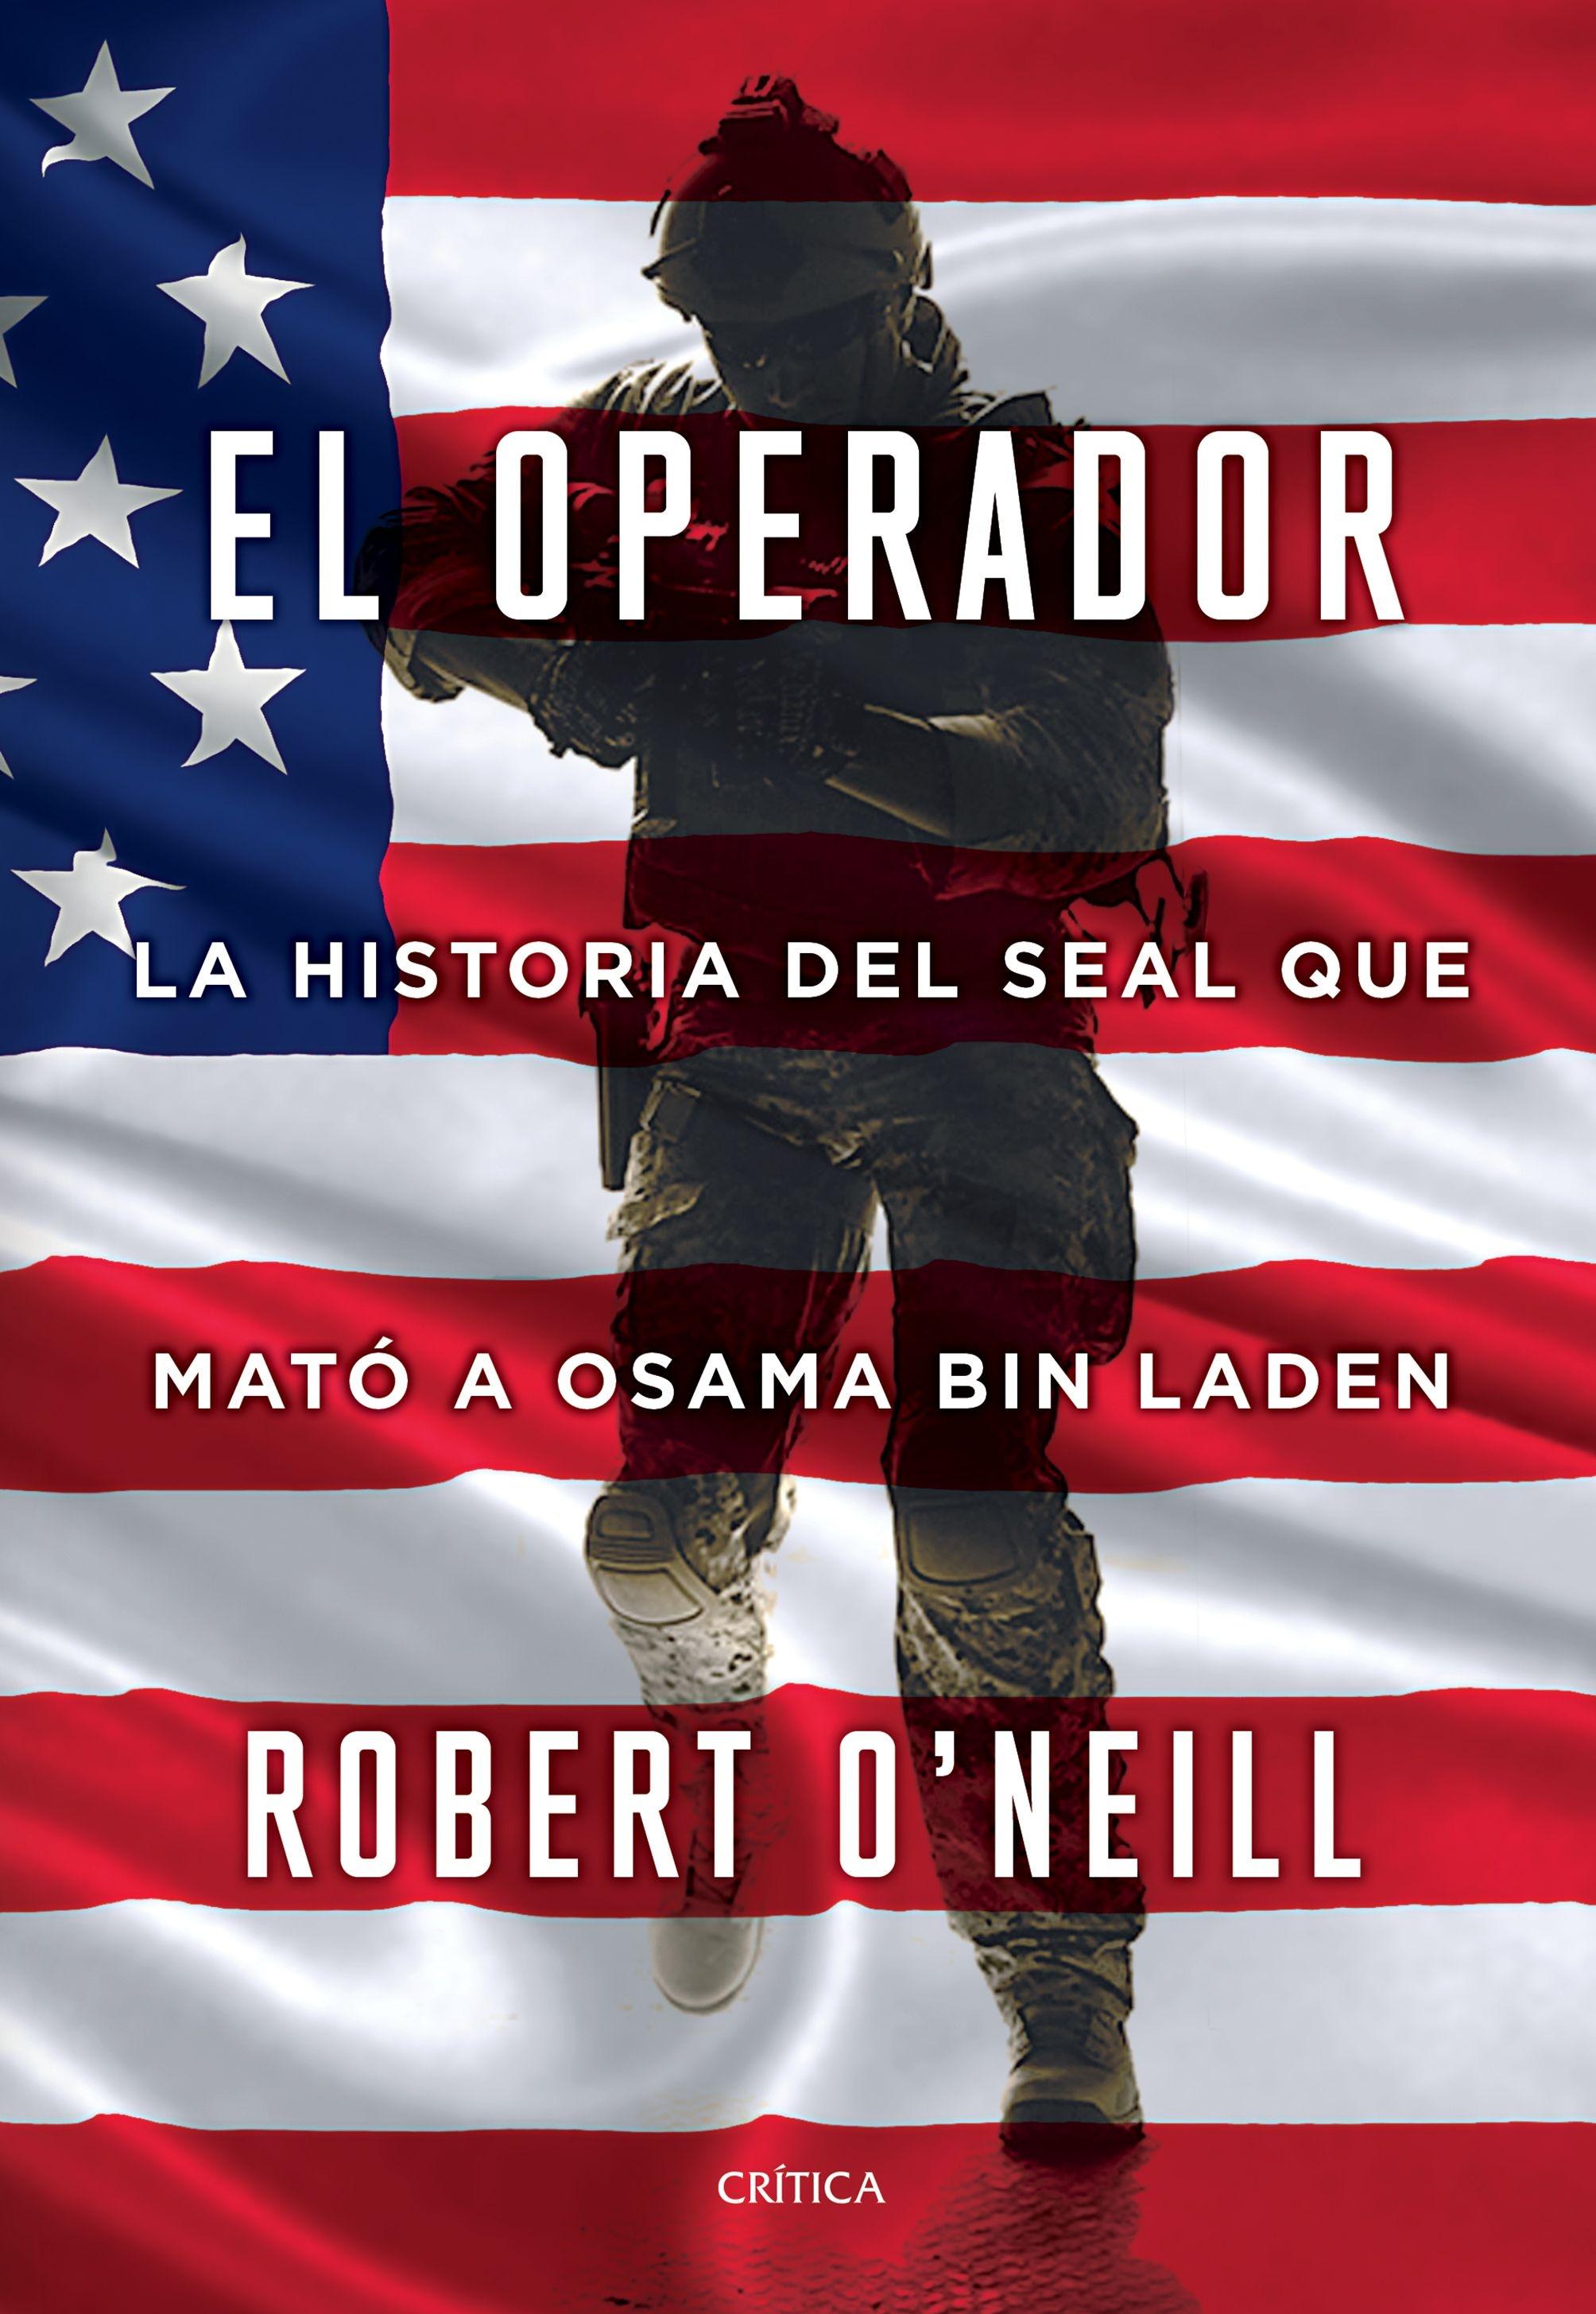 El Operador "La Historia del Seal que Mató a Osama Bin Laden". 